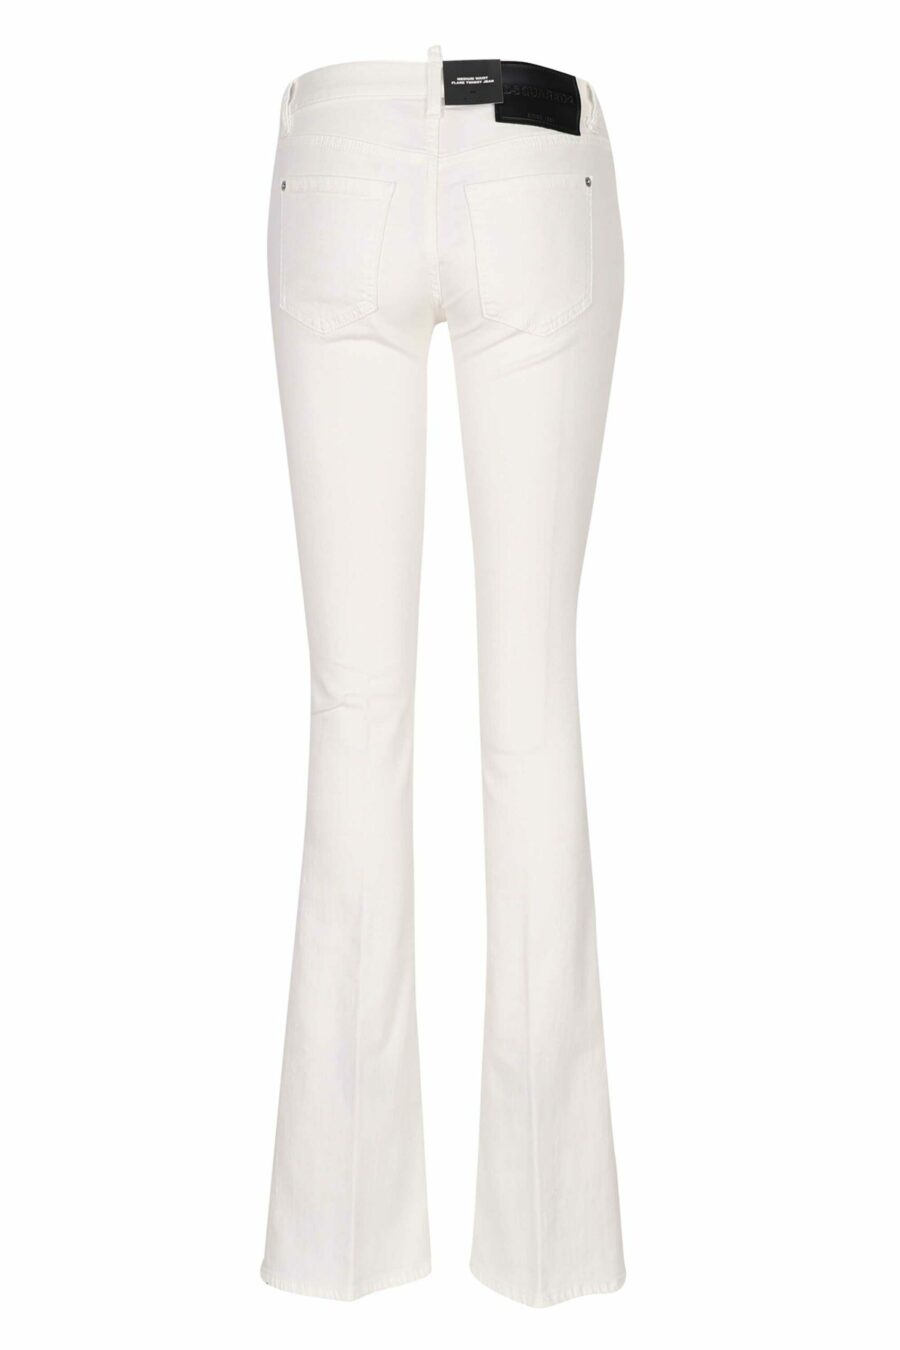 Pantalón vaquero blanco "twiggy jean" con bota ancha - 8054148307912 2 scaled